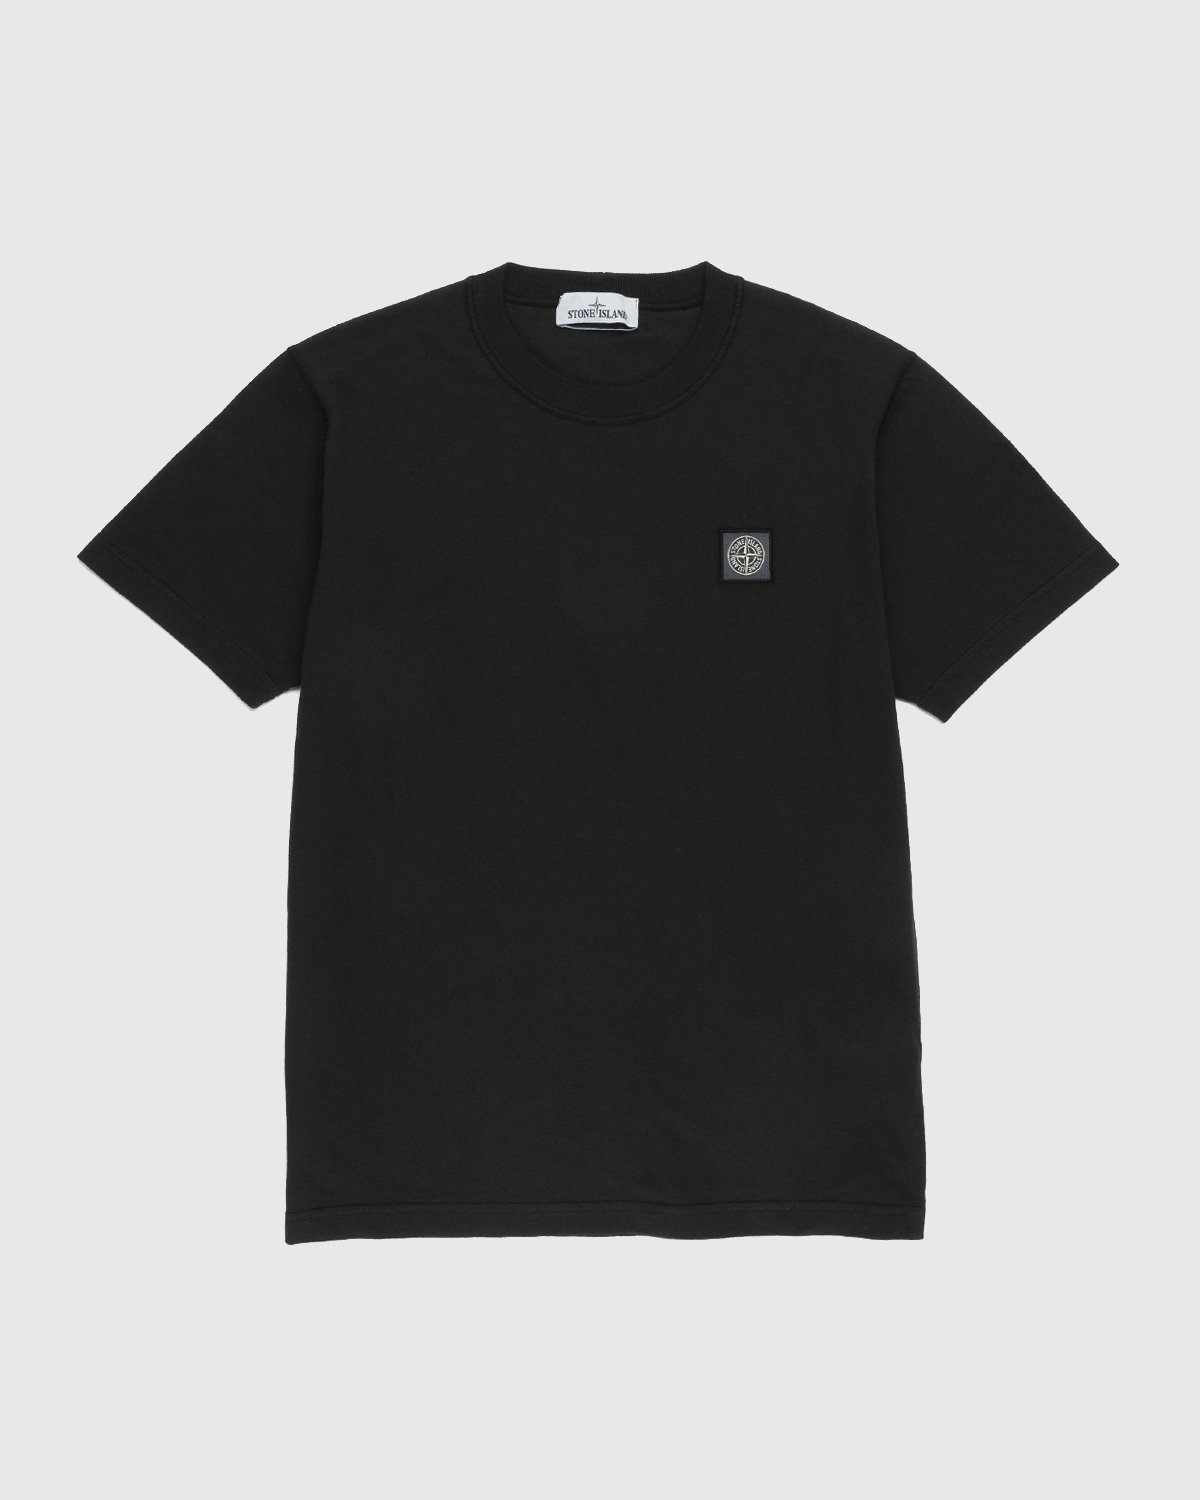 Stone Island - 23757 Garment-Dyed Fissato T-Shirt Black - Clothing - Black - Image 1